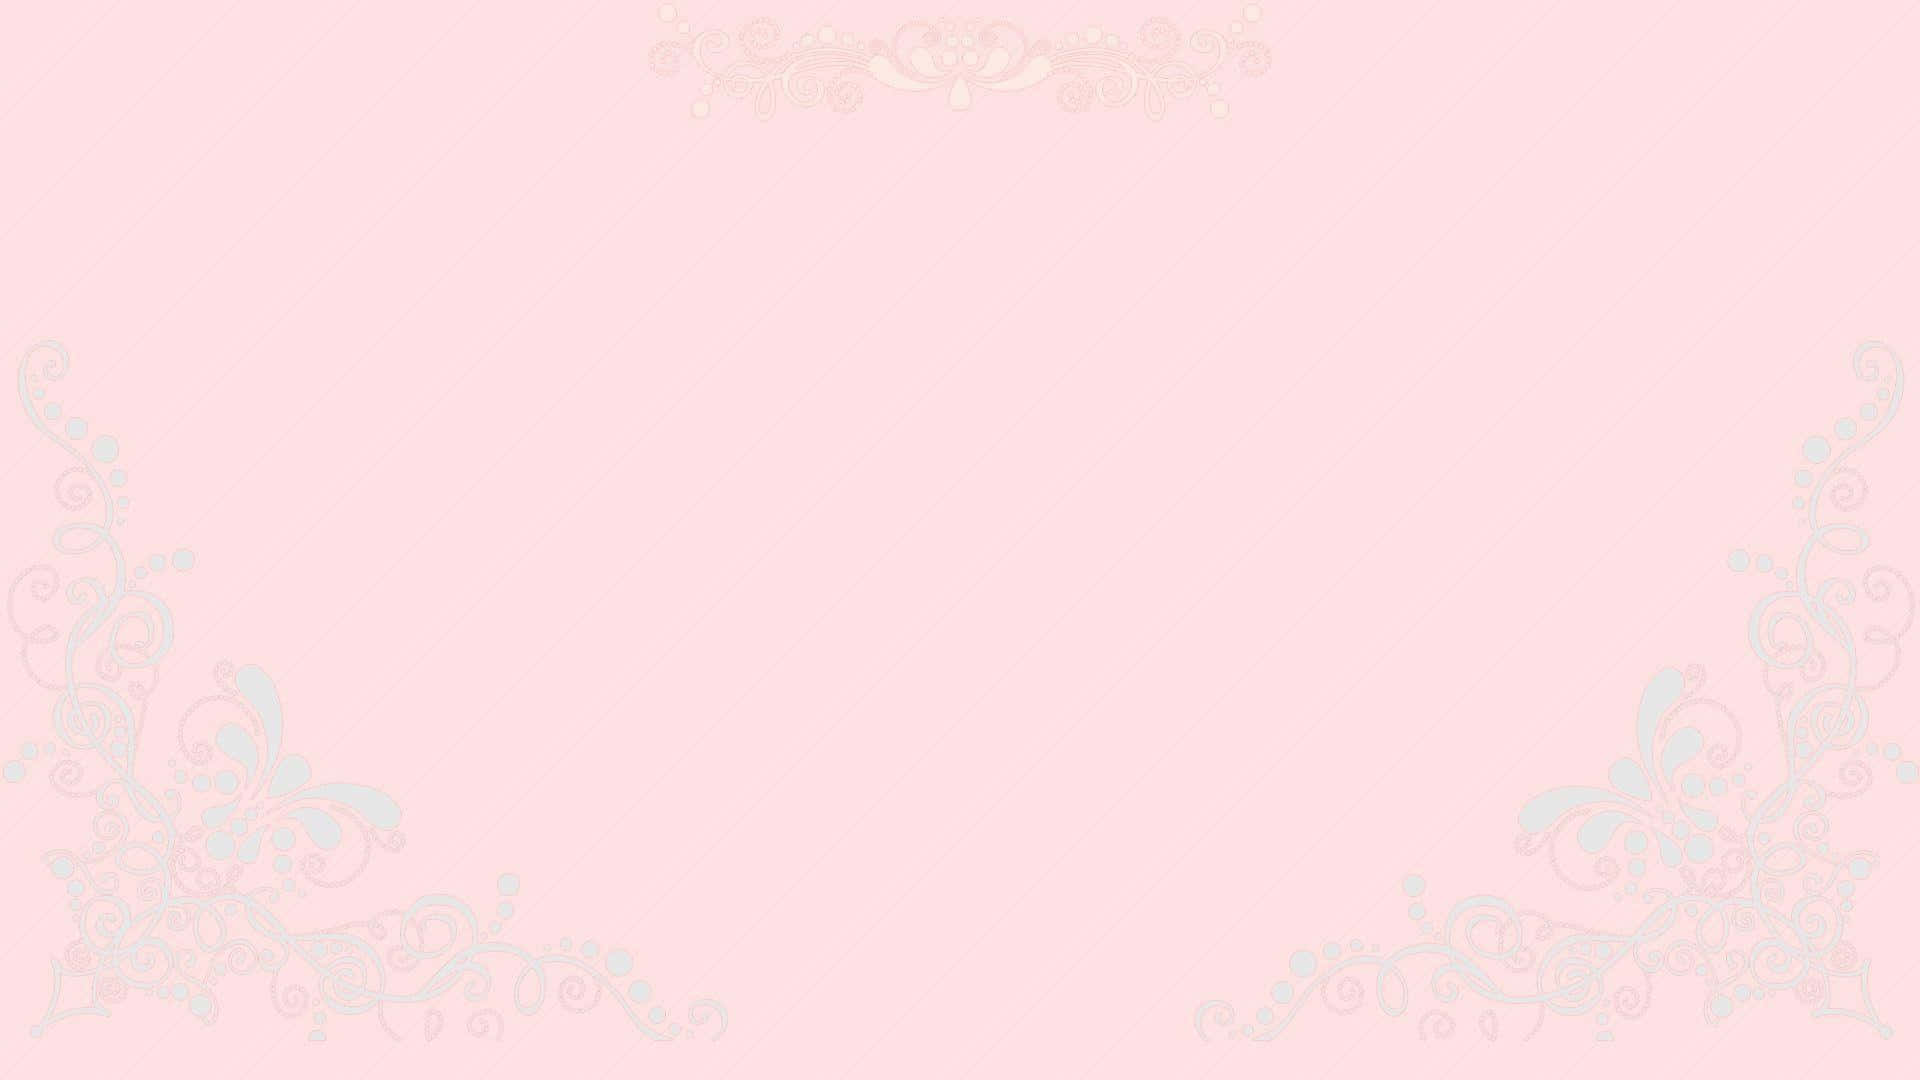 Fed og smuk, denne solide pink tapet er den perfekte måde at gøre et udsagn på. Wallpaper